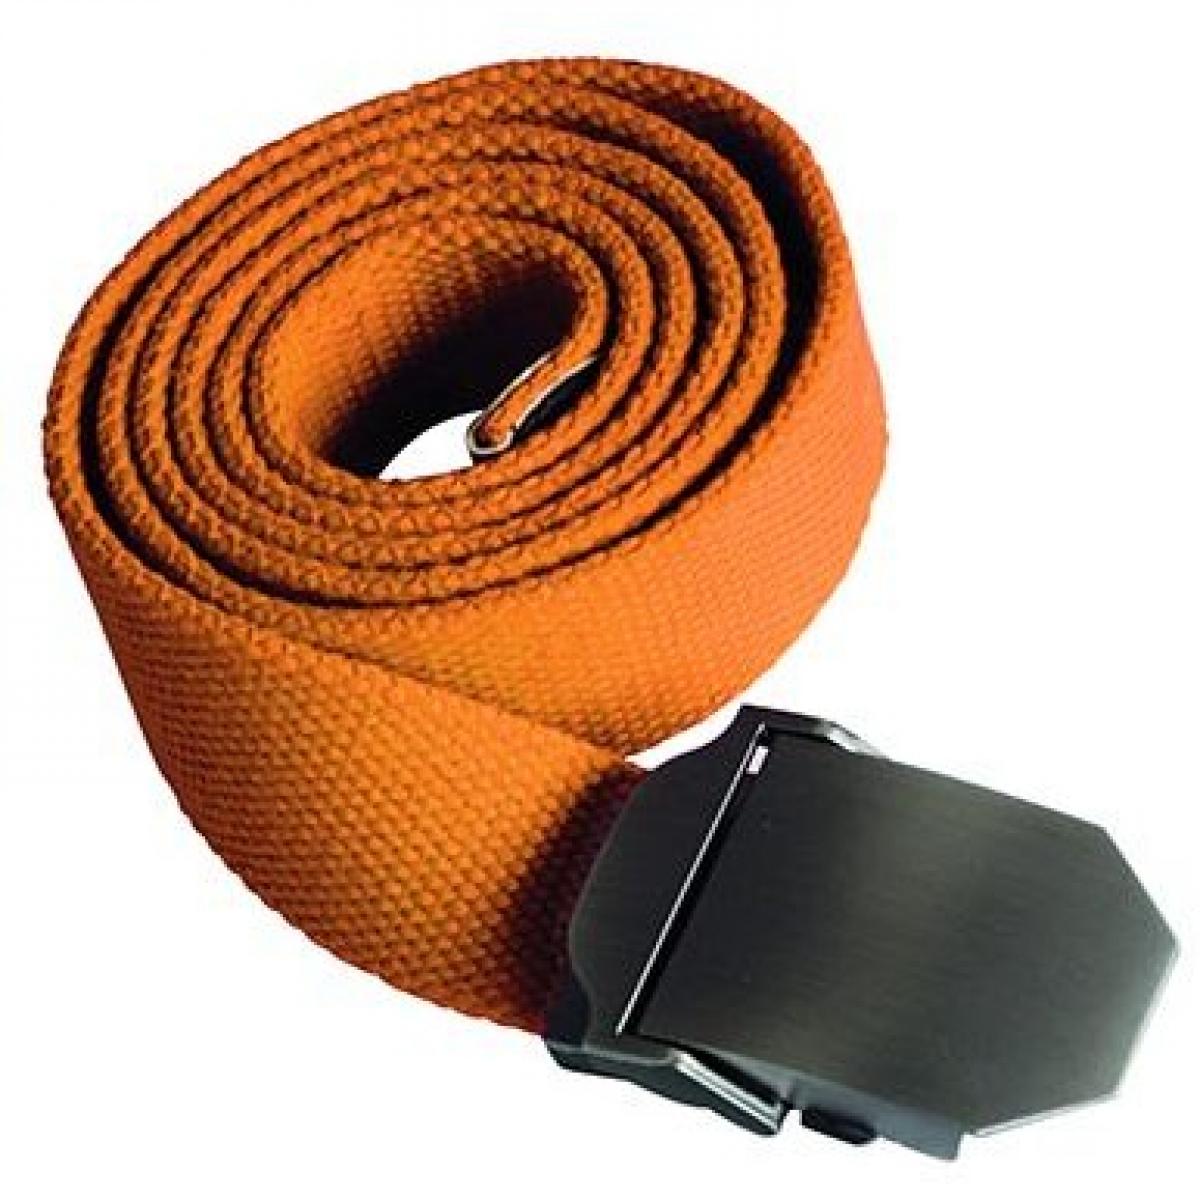 Hersteller: Korntex Herstellernummer: KXWWBN Artikelbezeichnung: Workwear Belt Classic, 140 cm L, selbst kürzbar, B 4 cm Farbe: Orange